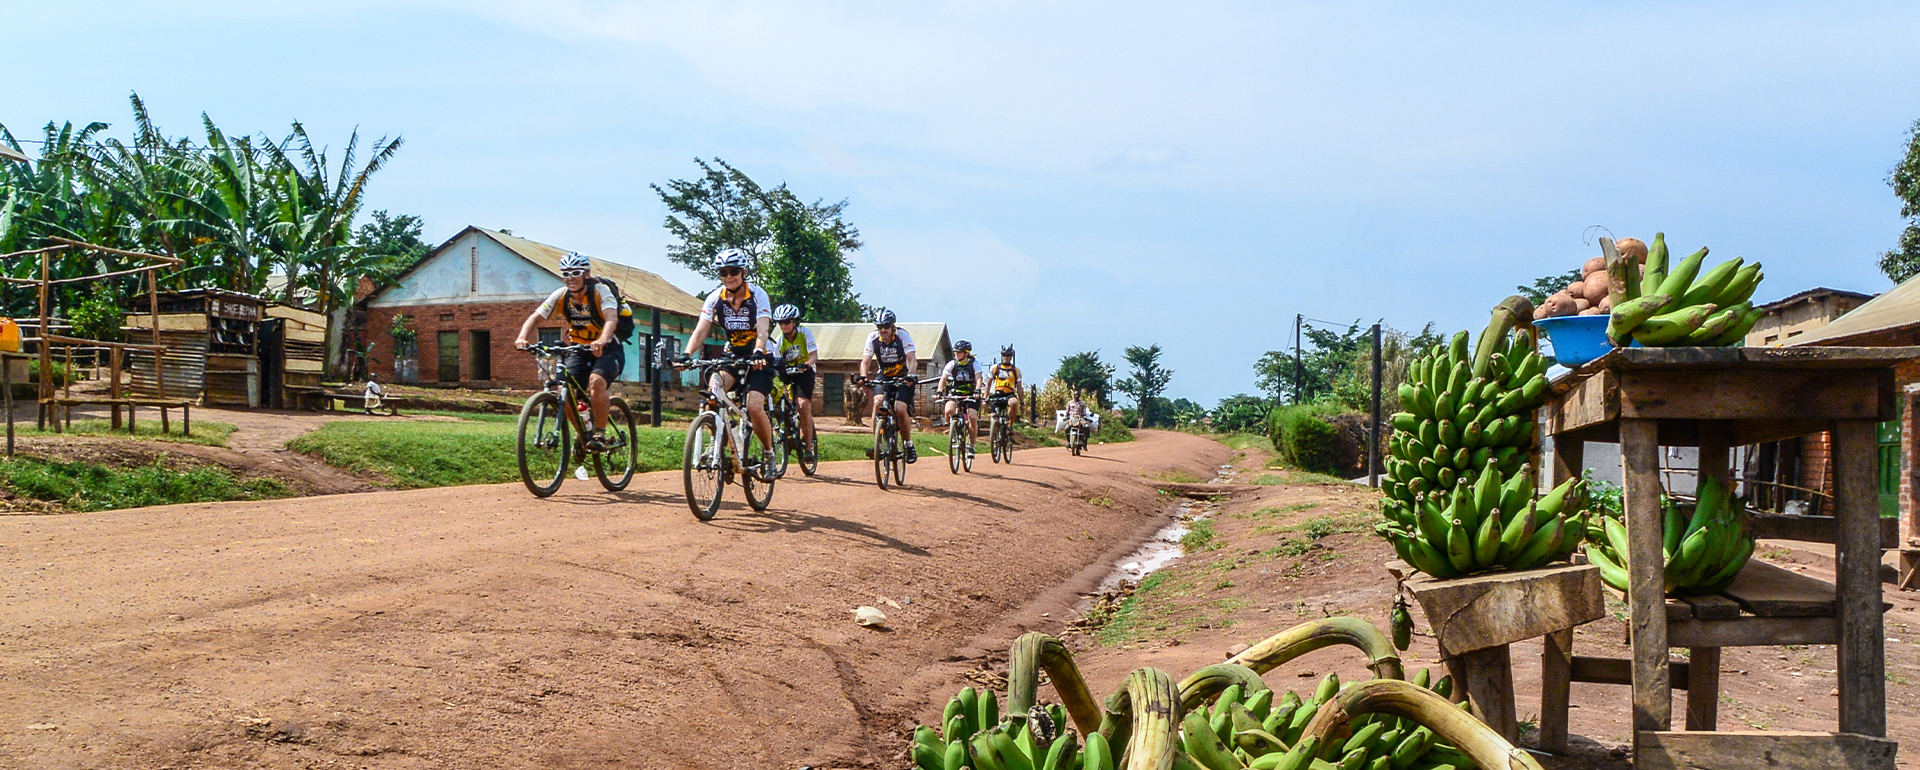 Uganda-Ruanda Bikereise Afrika